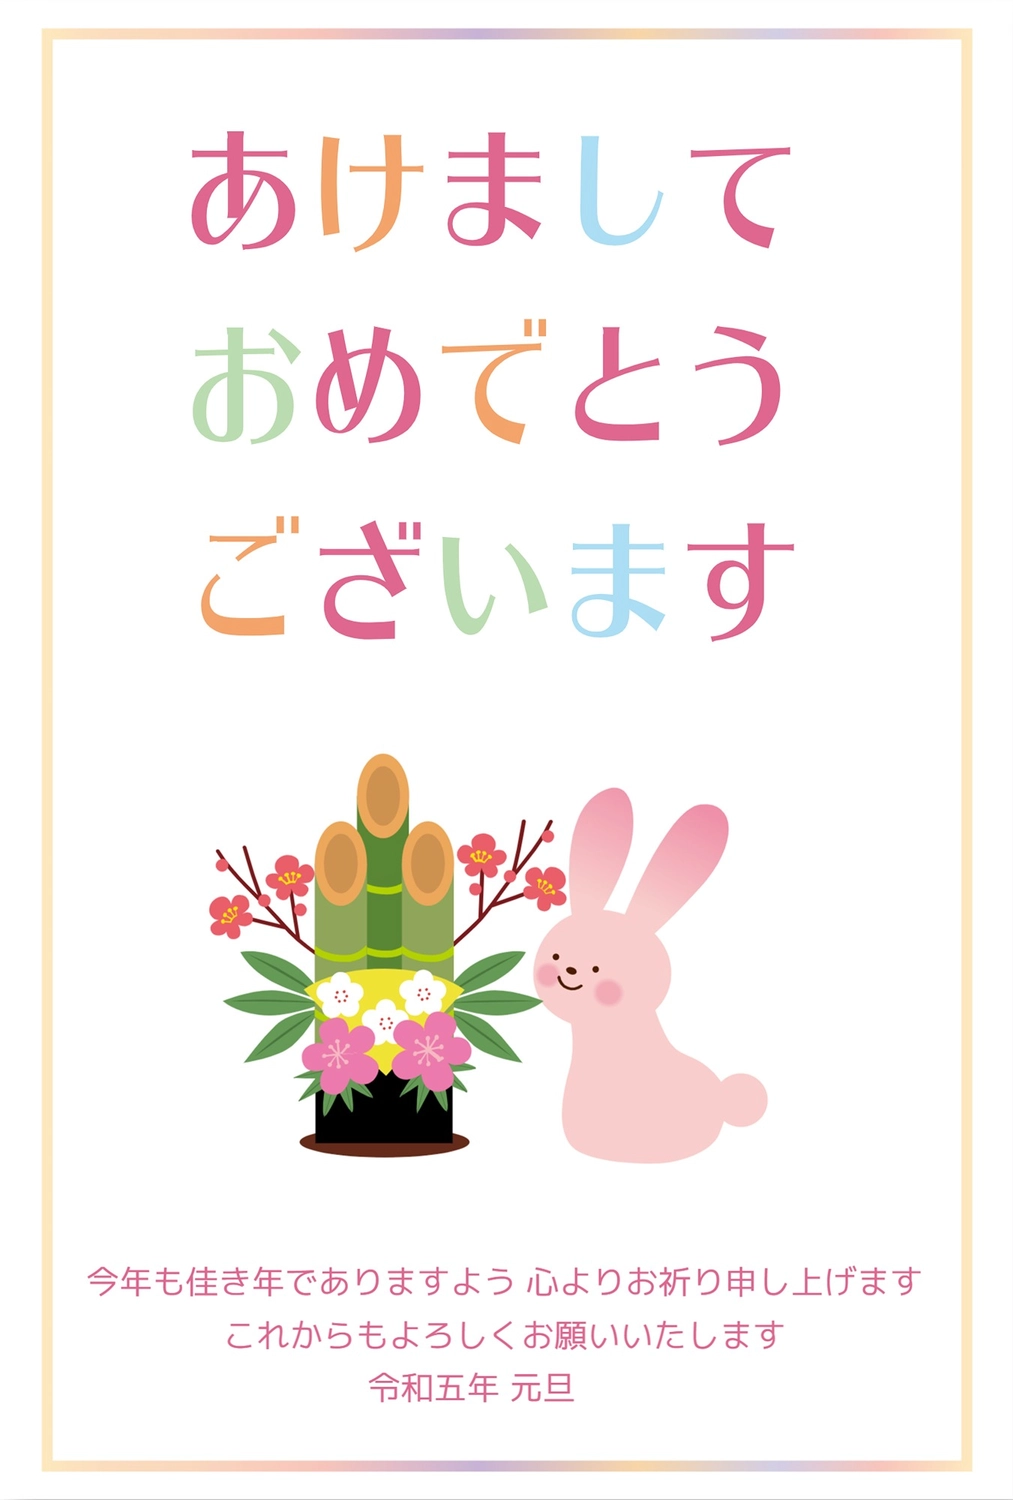 ピンクのウサギと門松, Thiệp chúc mừng năm mới, 令和, ラビット, Thiệp năm mới mẫu